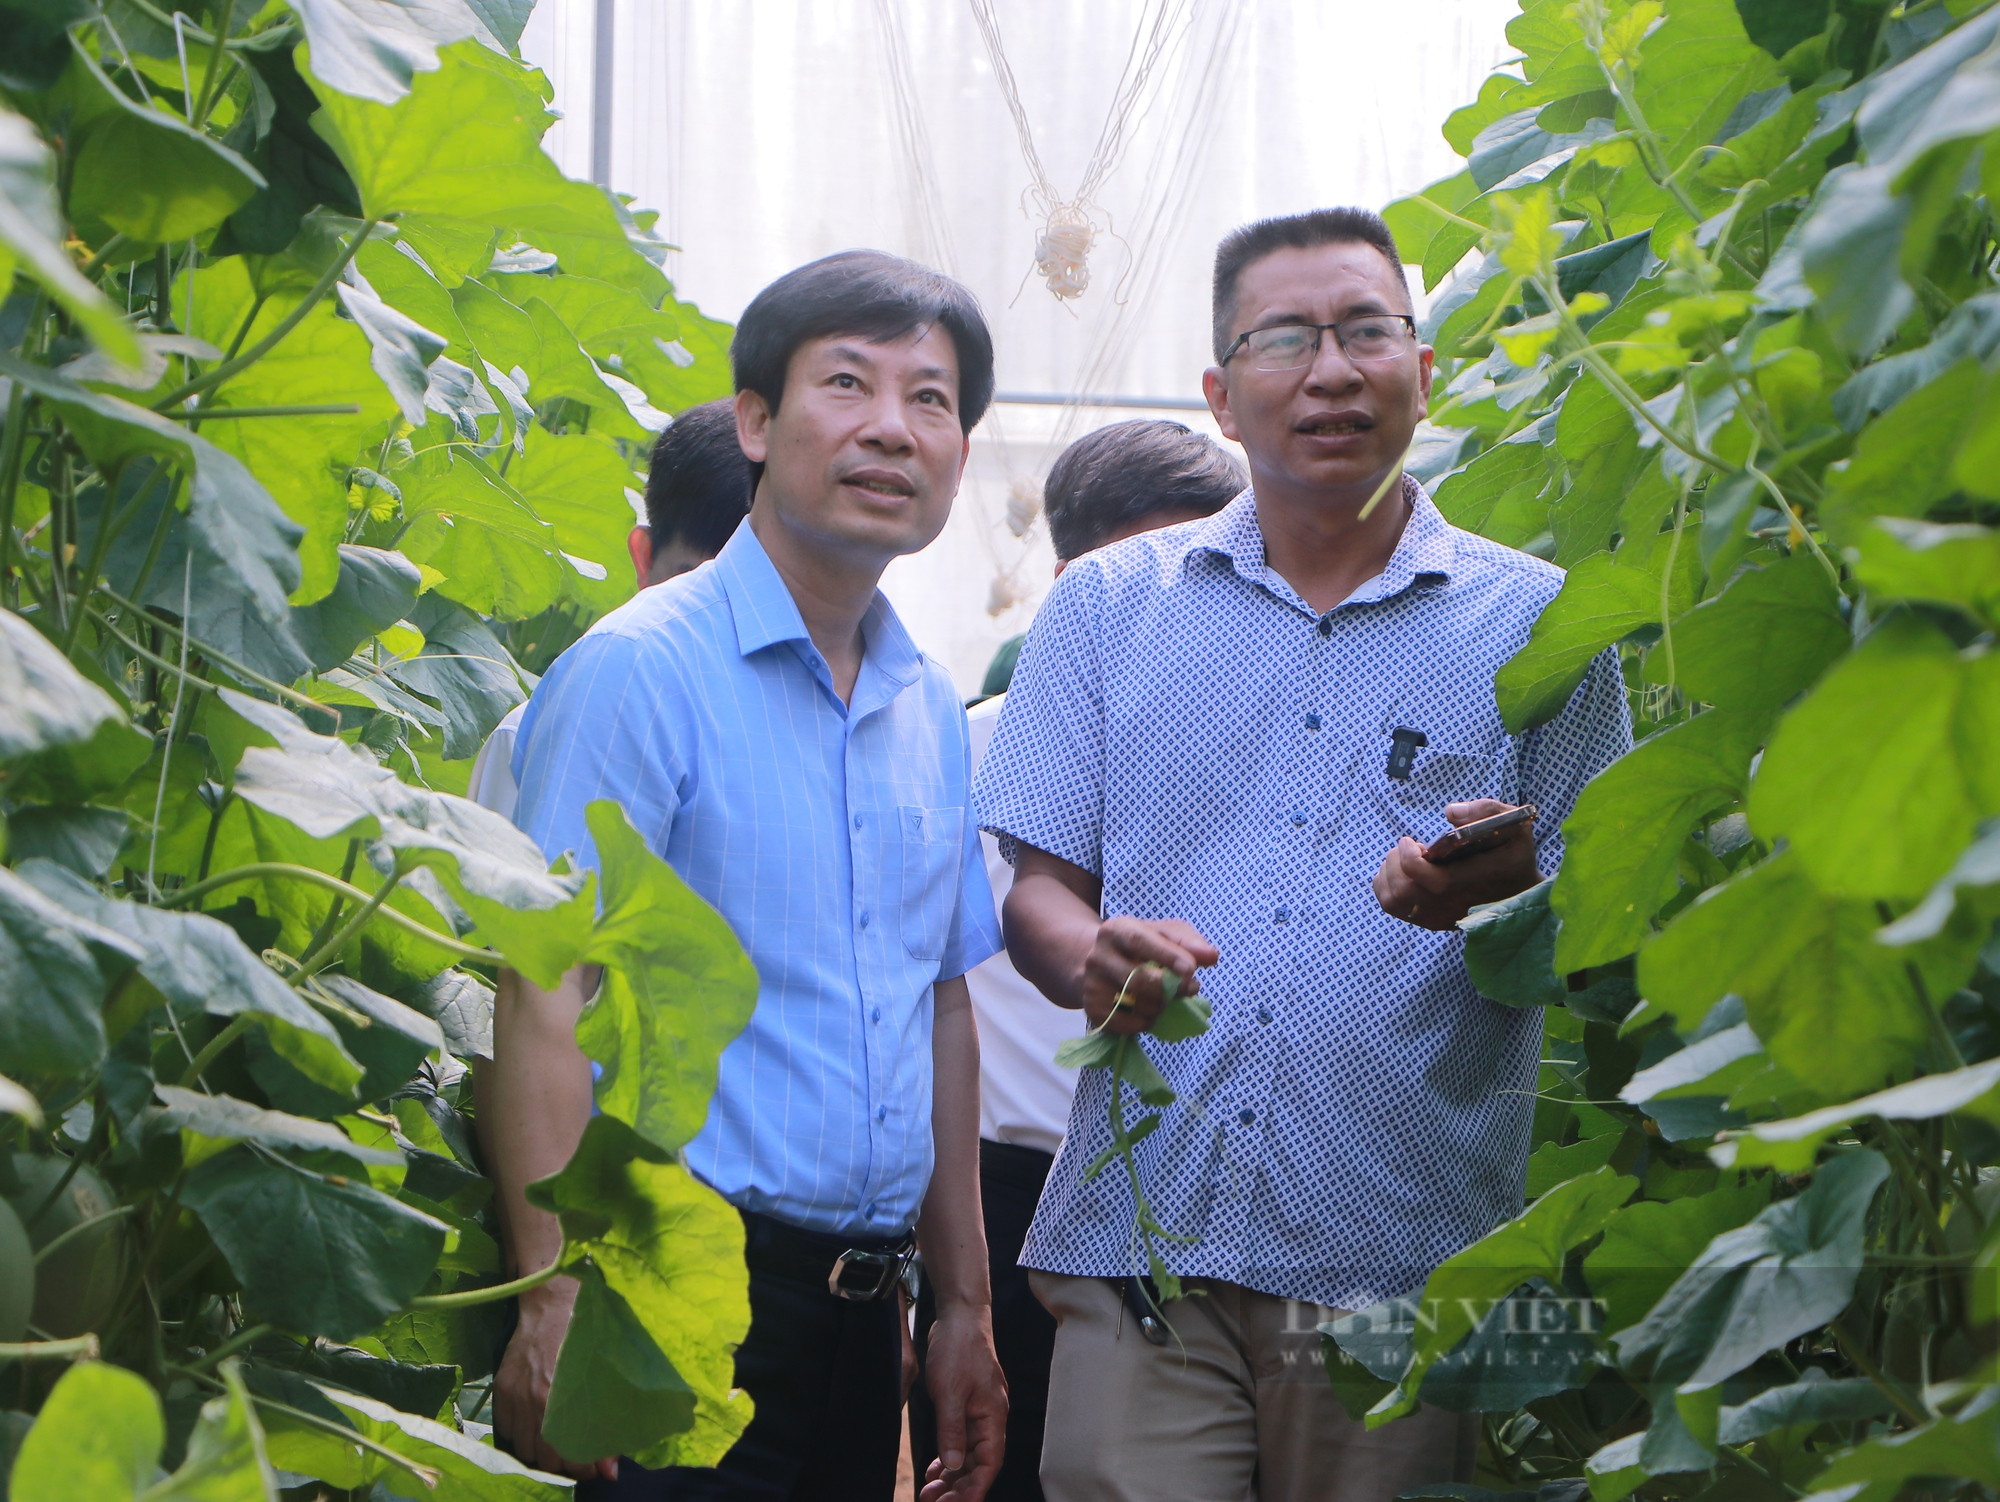 Phó chủ tịch TƯ Hội Nông dân Việt Nam Nguyễn Xuân Định thăm các mô hình trồng cây ăn trái tại Bình Phước - Ảnh 2.